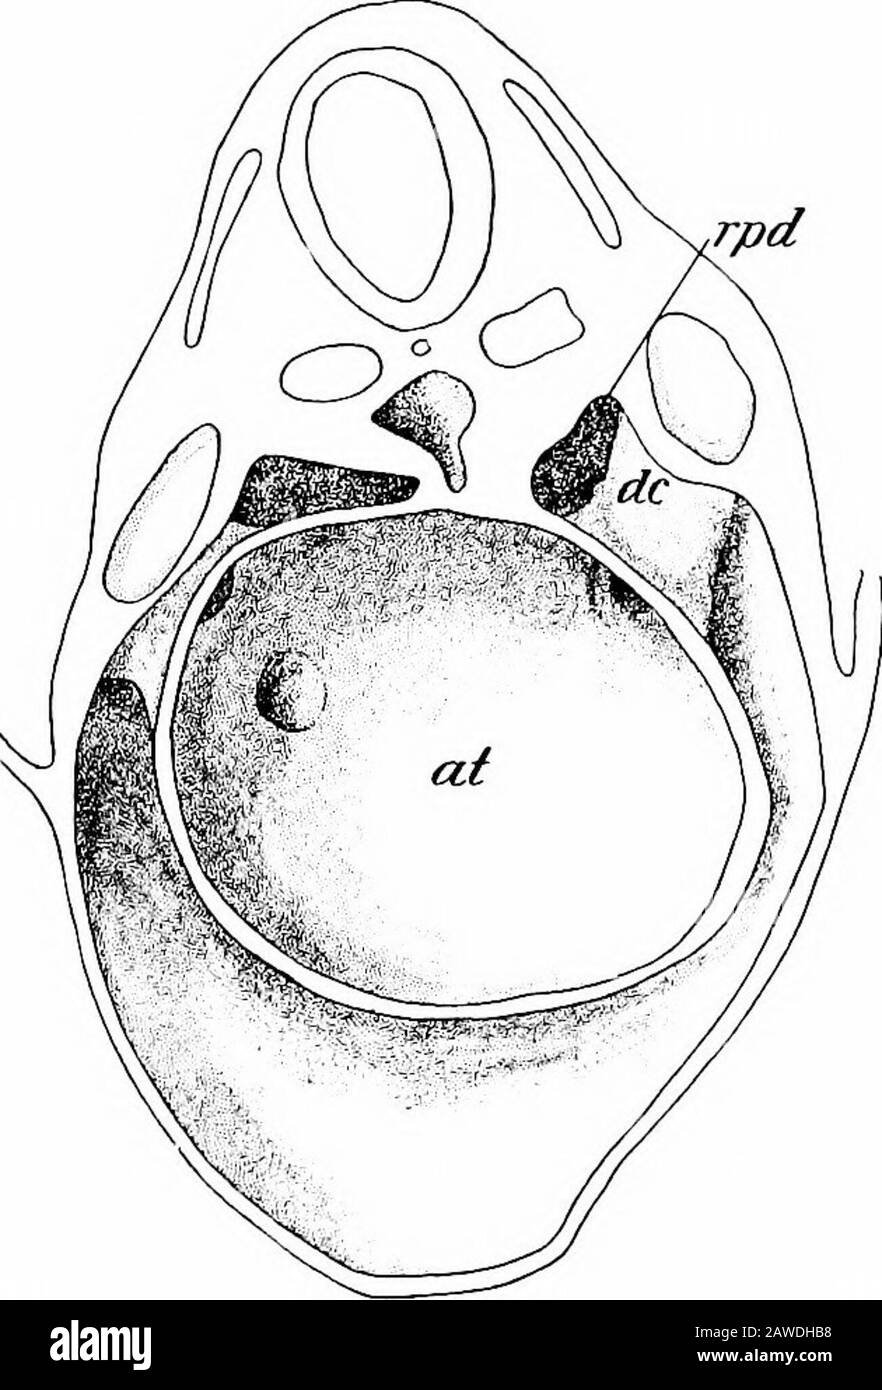 Lo sviluppo del corpo umano; un manuale di embriologia umana. pd e rpv, divisionsdorsale e ventrale della cavità parietale; vom, vena omphalo-mesenterica.-(Ravn.) tronco-cavità è interrotta, in modo che formino due ciecpouches che si estendono verso il basso a breve distanza dalla porzione ventrale del pavimento della cavità parietale. Le cavità dorsali, tuttavia, mantengono la loro continuità con la cavità del tronco fino a un periodo molto più tardi. Mediante la fusione delle vene omphalo-mesenteriche poste sopra, si forma una folta semilunare spessa che sporge orizzontalmente nel coelom dal wallof ventrale Foto Stock